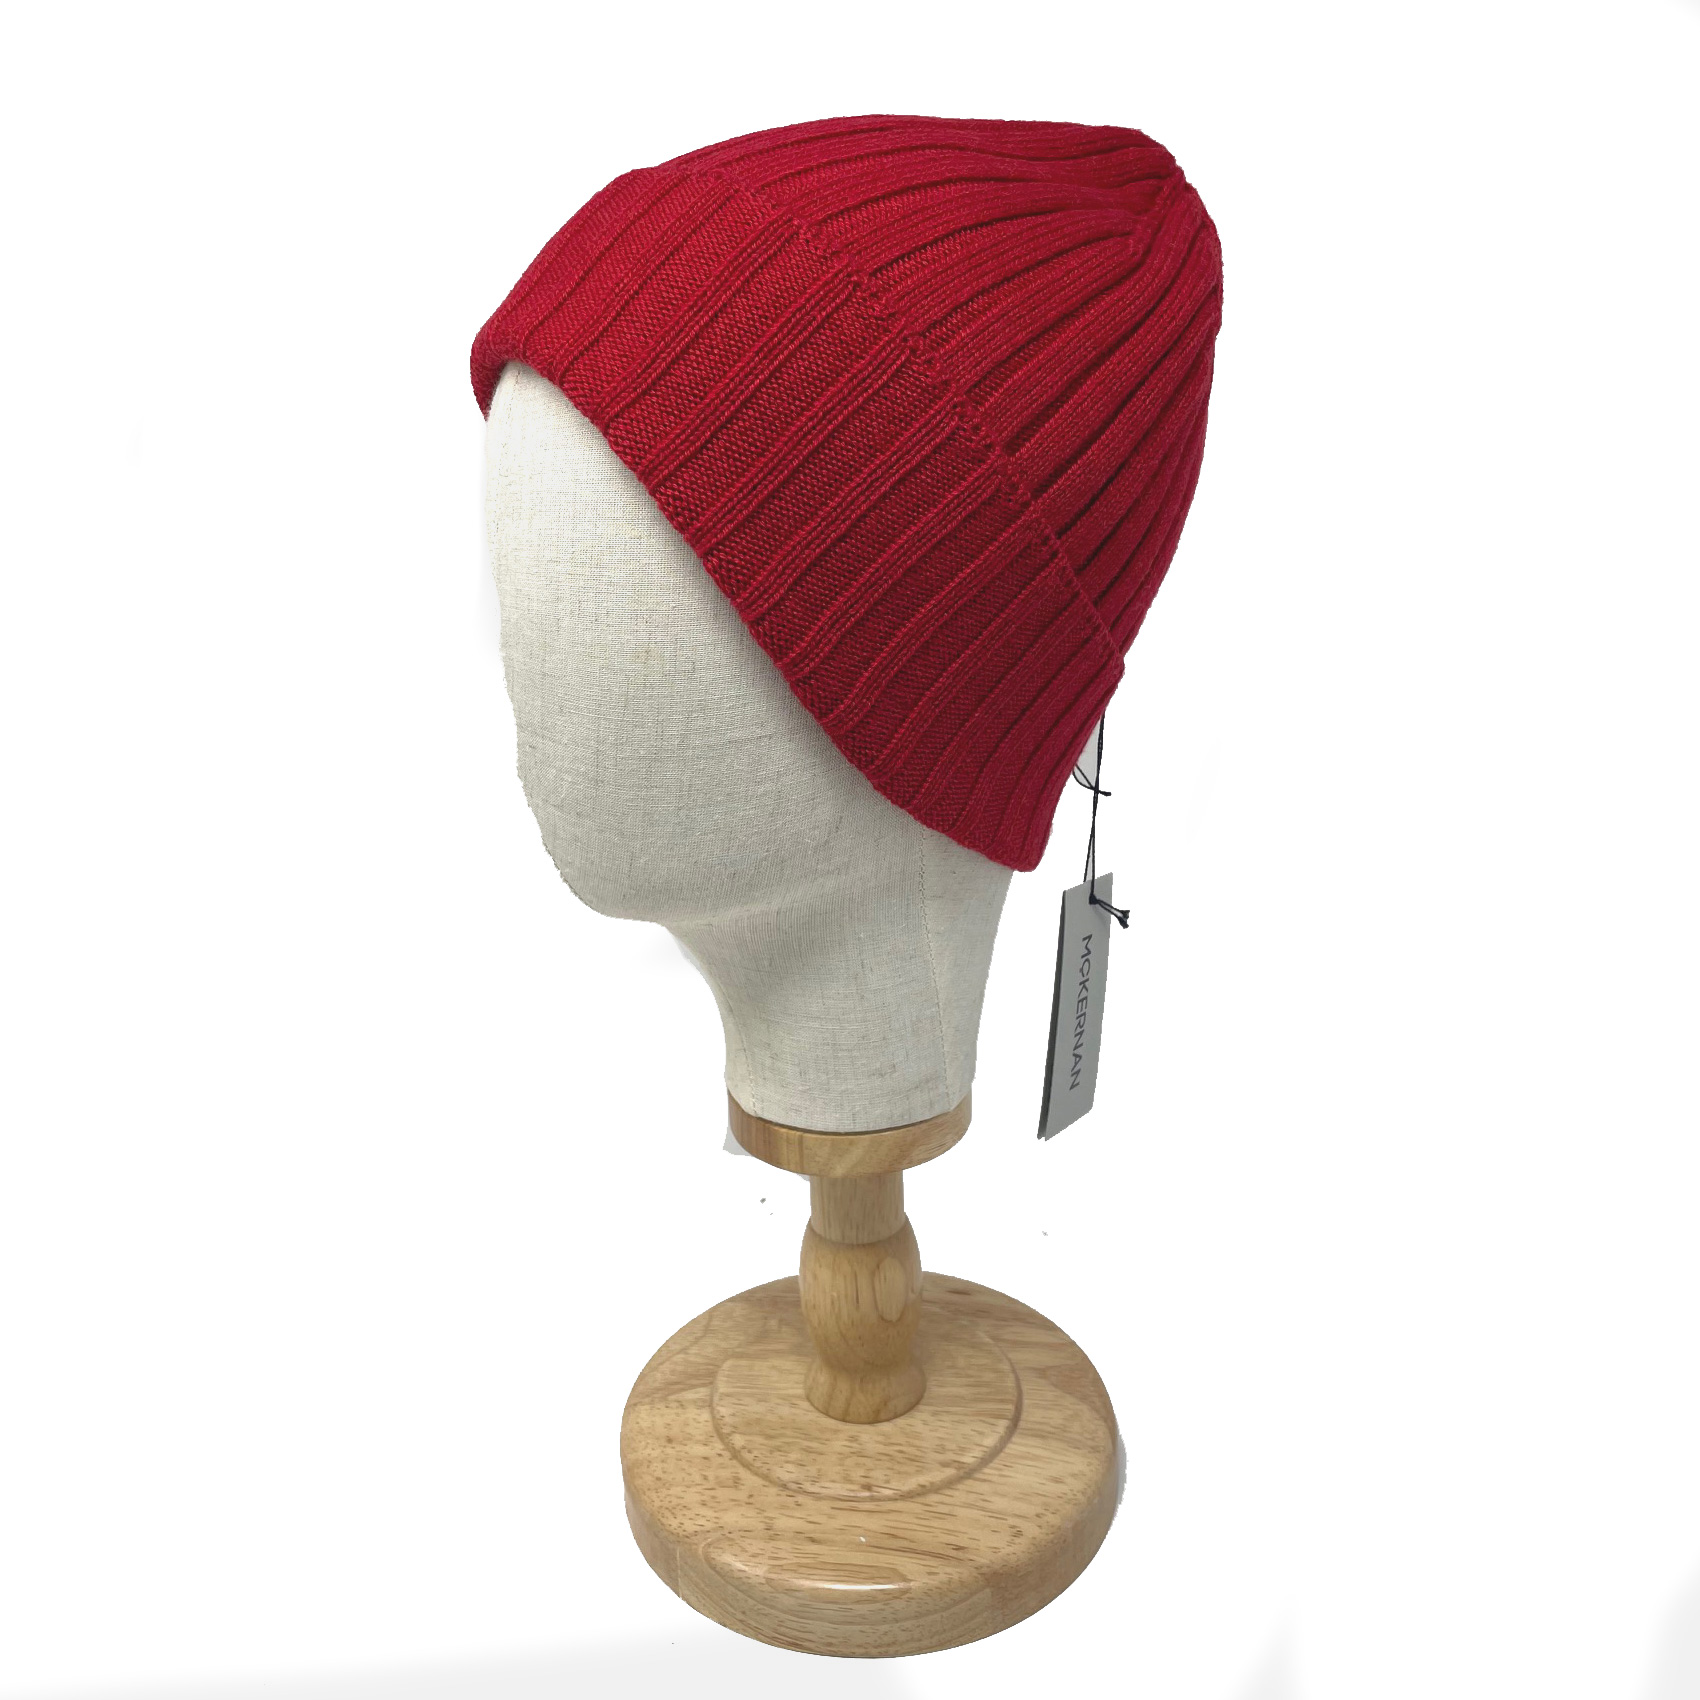 McKernan Mütze "FINE RIB HAT" warm red, Wollmütze, 100% Wolle, sehr weich!  